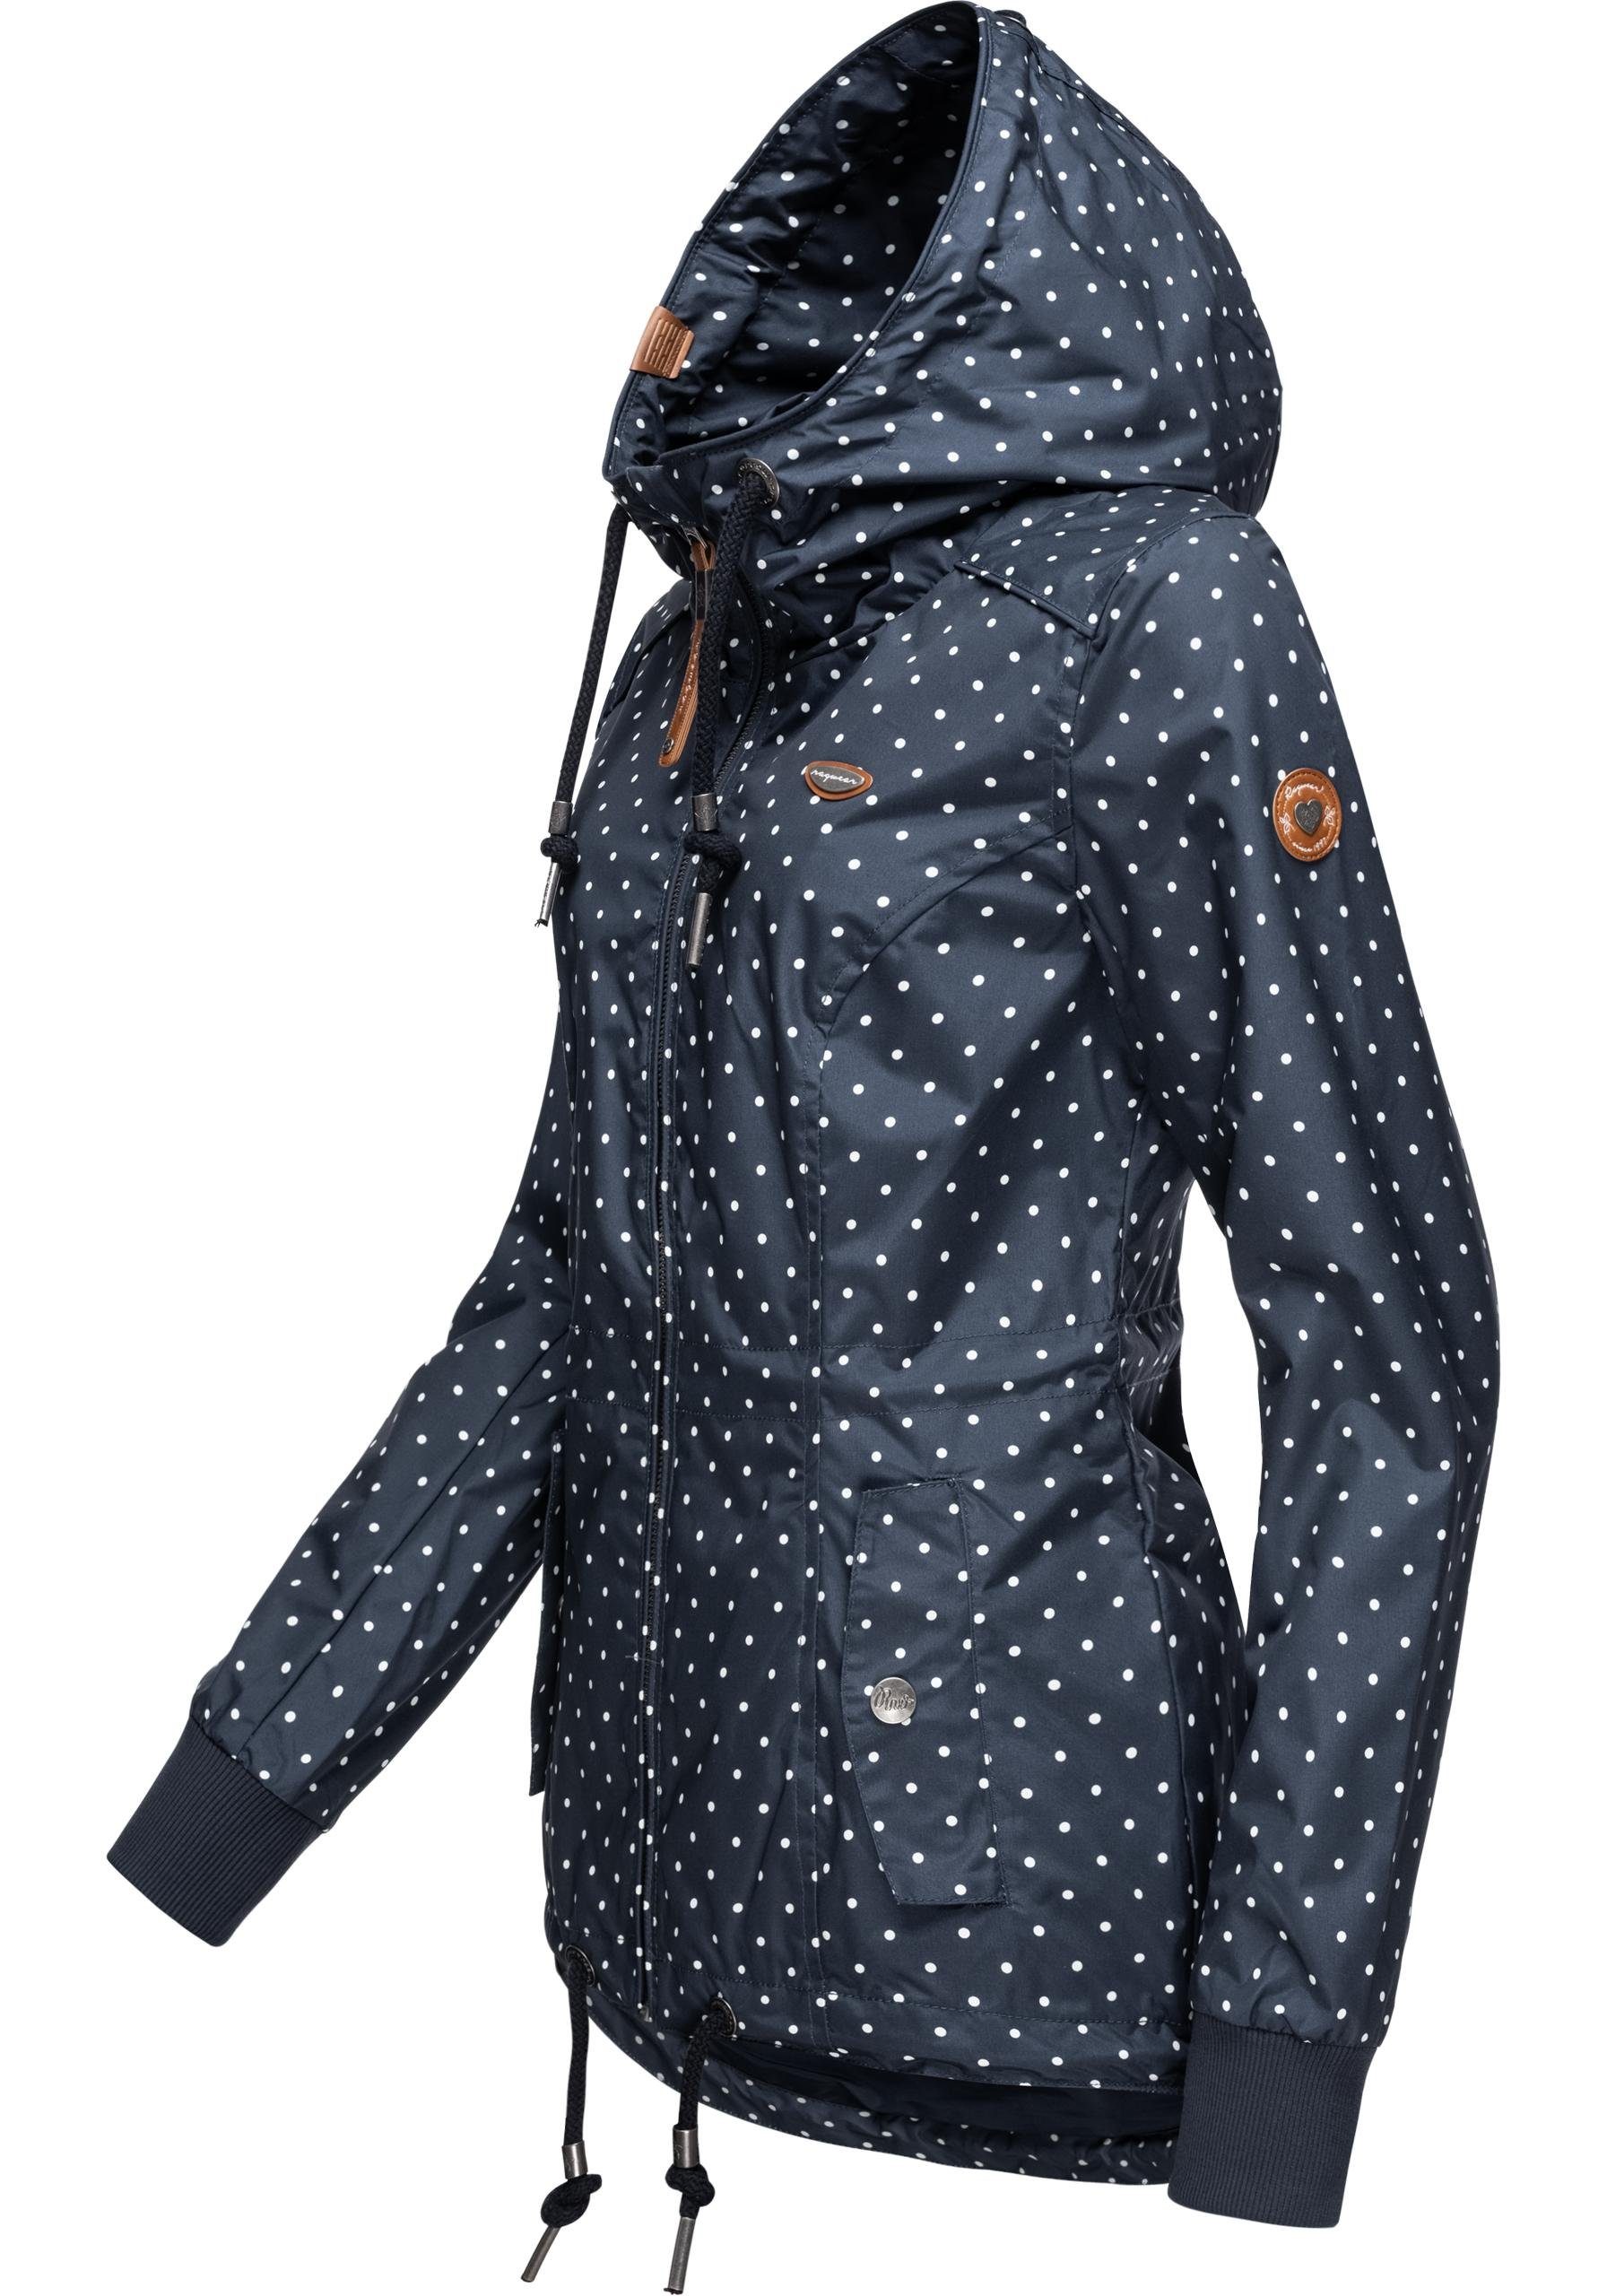 Outdoorjacke großer Übergangsjacke Dots Jacke Kapuze, Danka für Herbst) die stylische Ragwear mit Übergangszeit (Frühling,